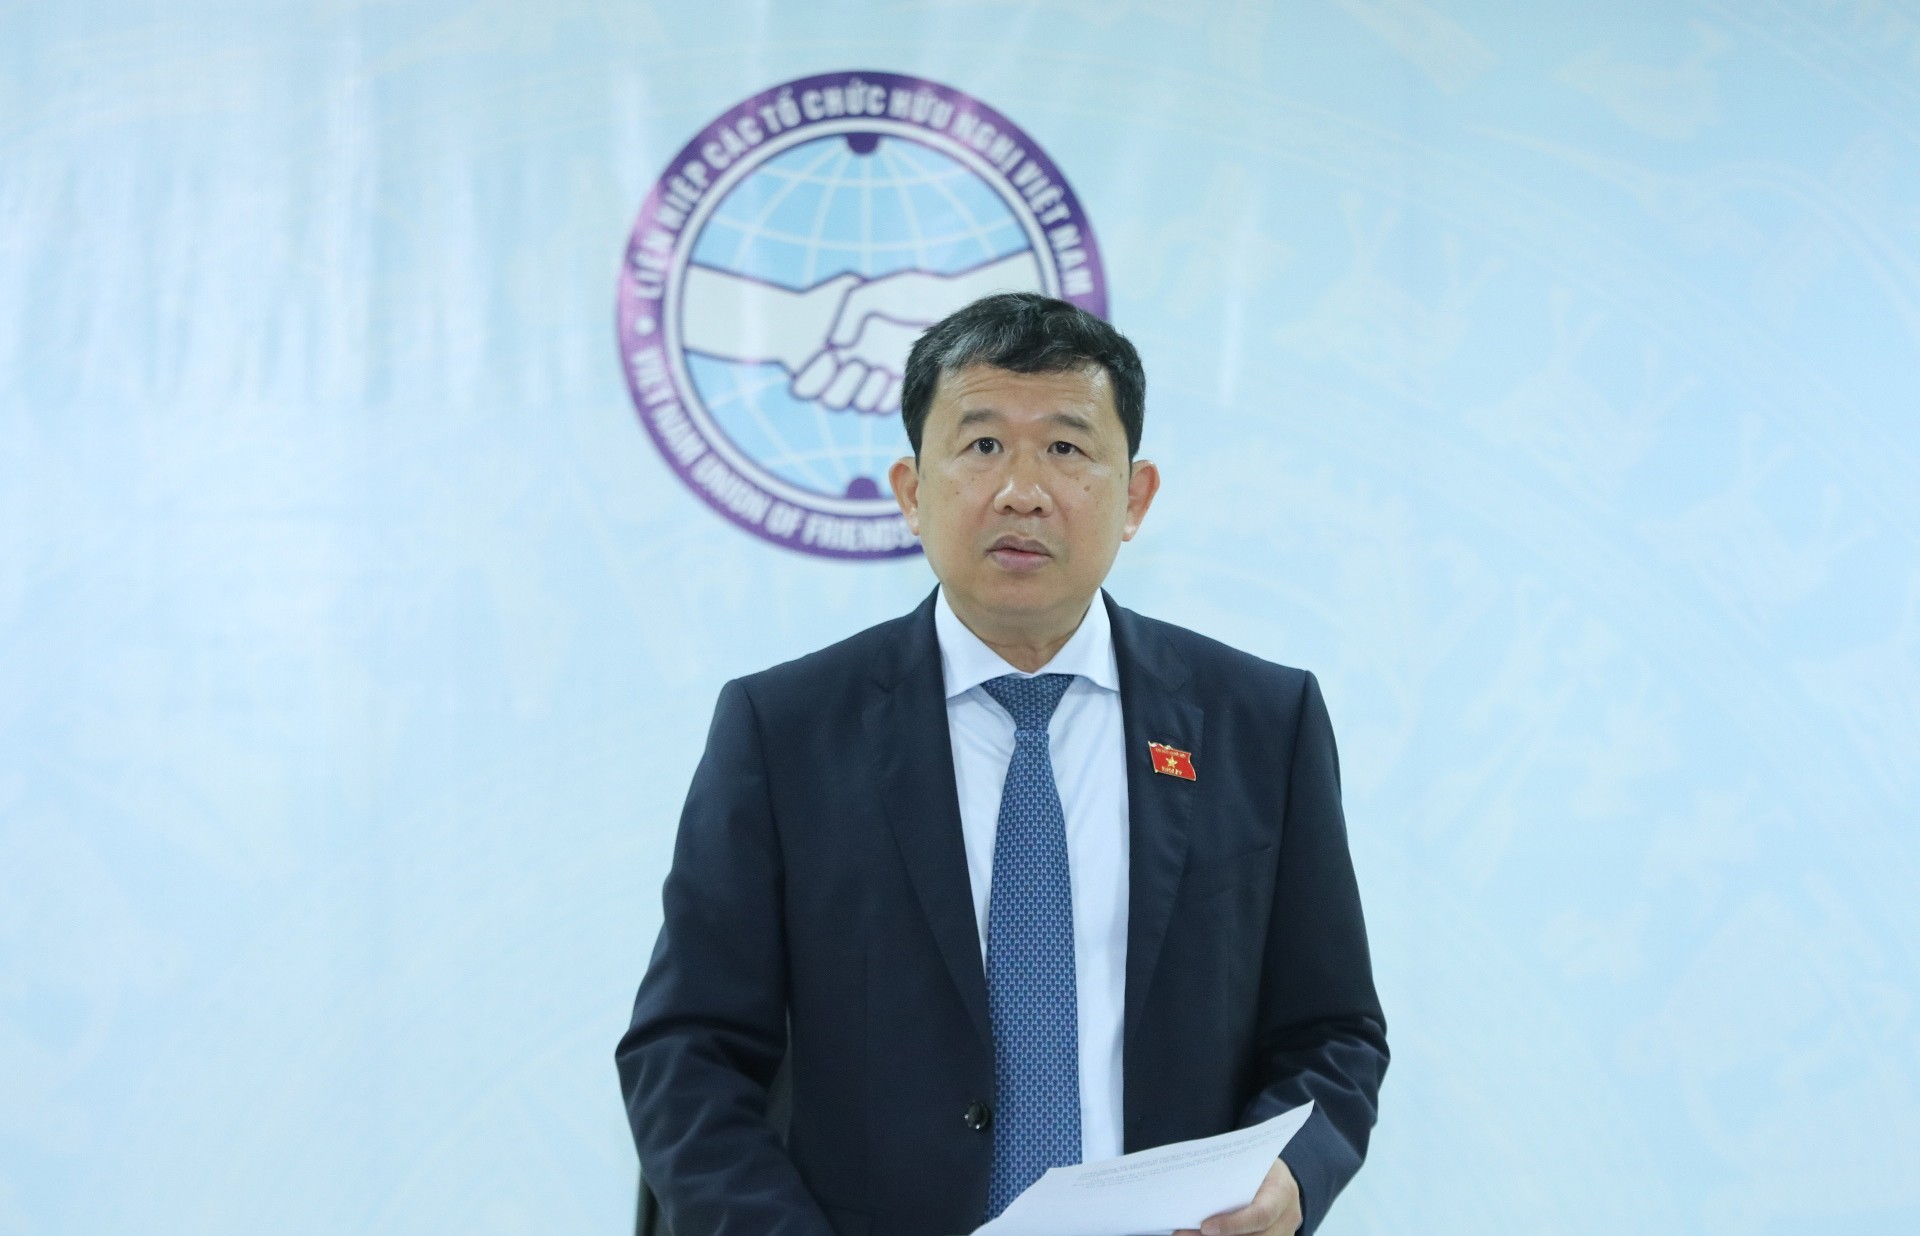 ông Vũ Hải Hà - Ủy viên Trung ương Đảng, Chủ nhiệm Ủy ban Đối ngoại Quốc hội, Chủ tịch Hội hữu nghị Việt Nam - Cuba phát biểu tại Hội nghị (Ảnh: Thu Hà).